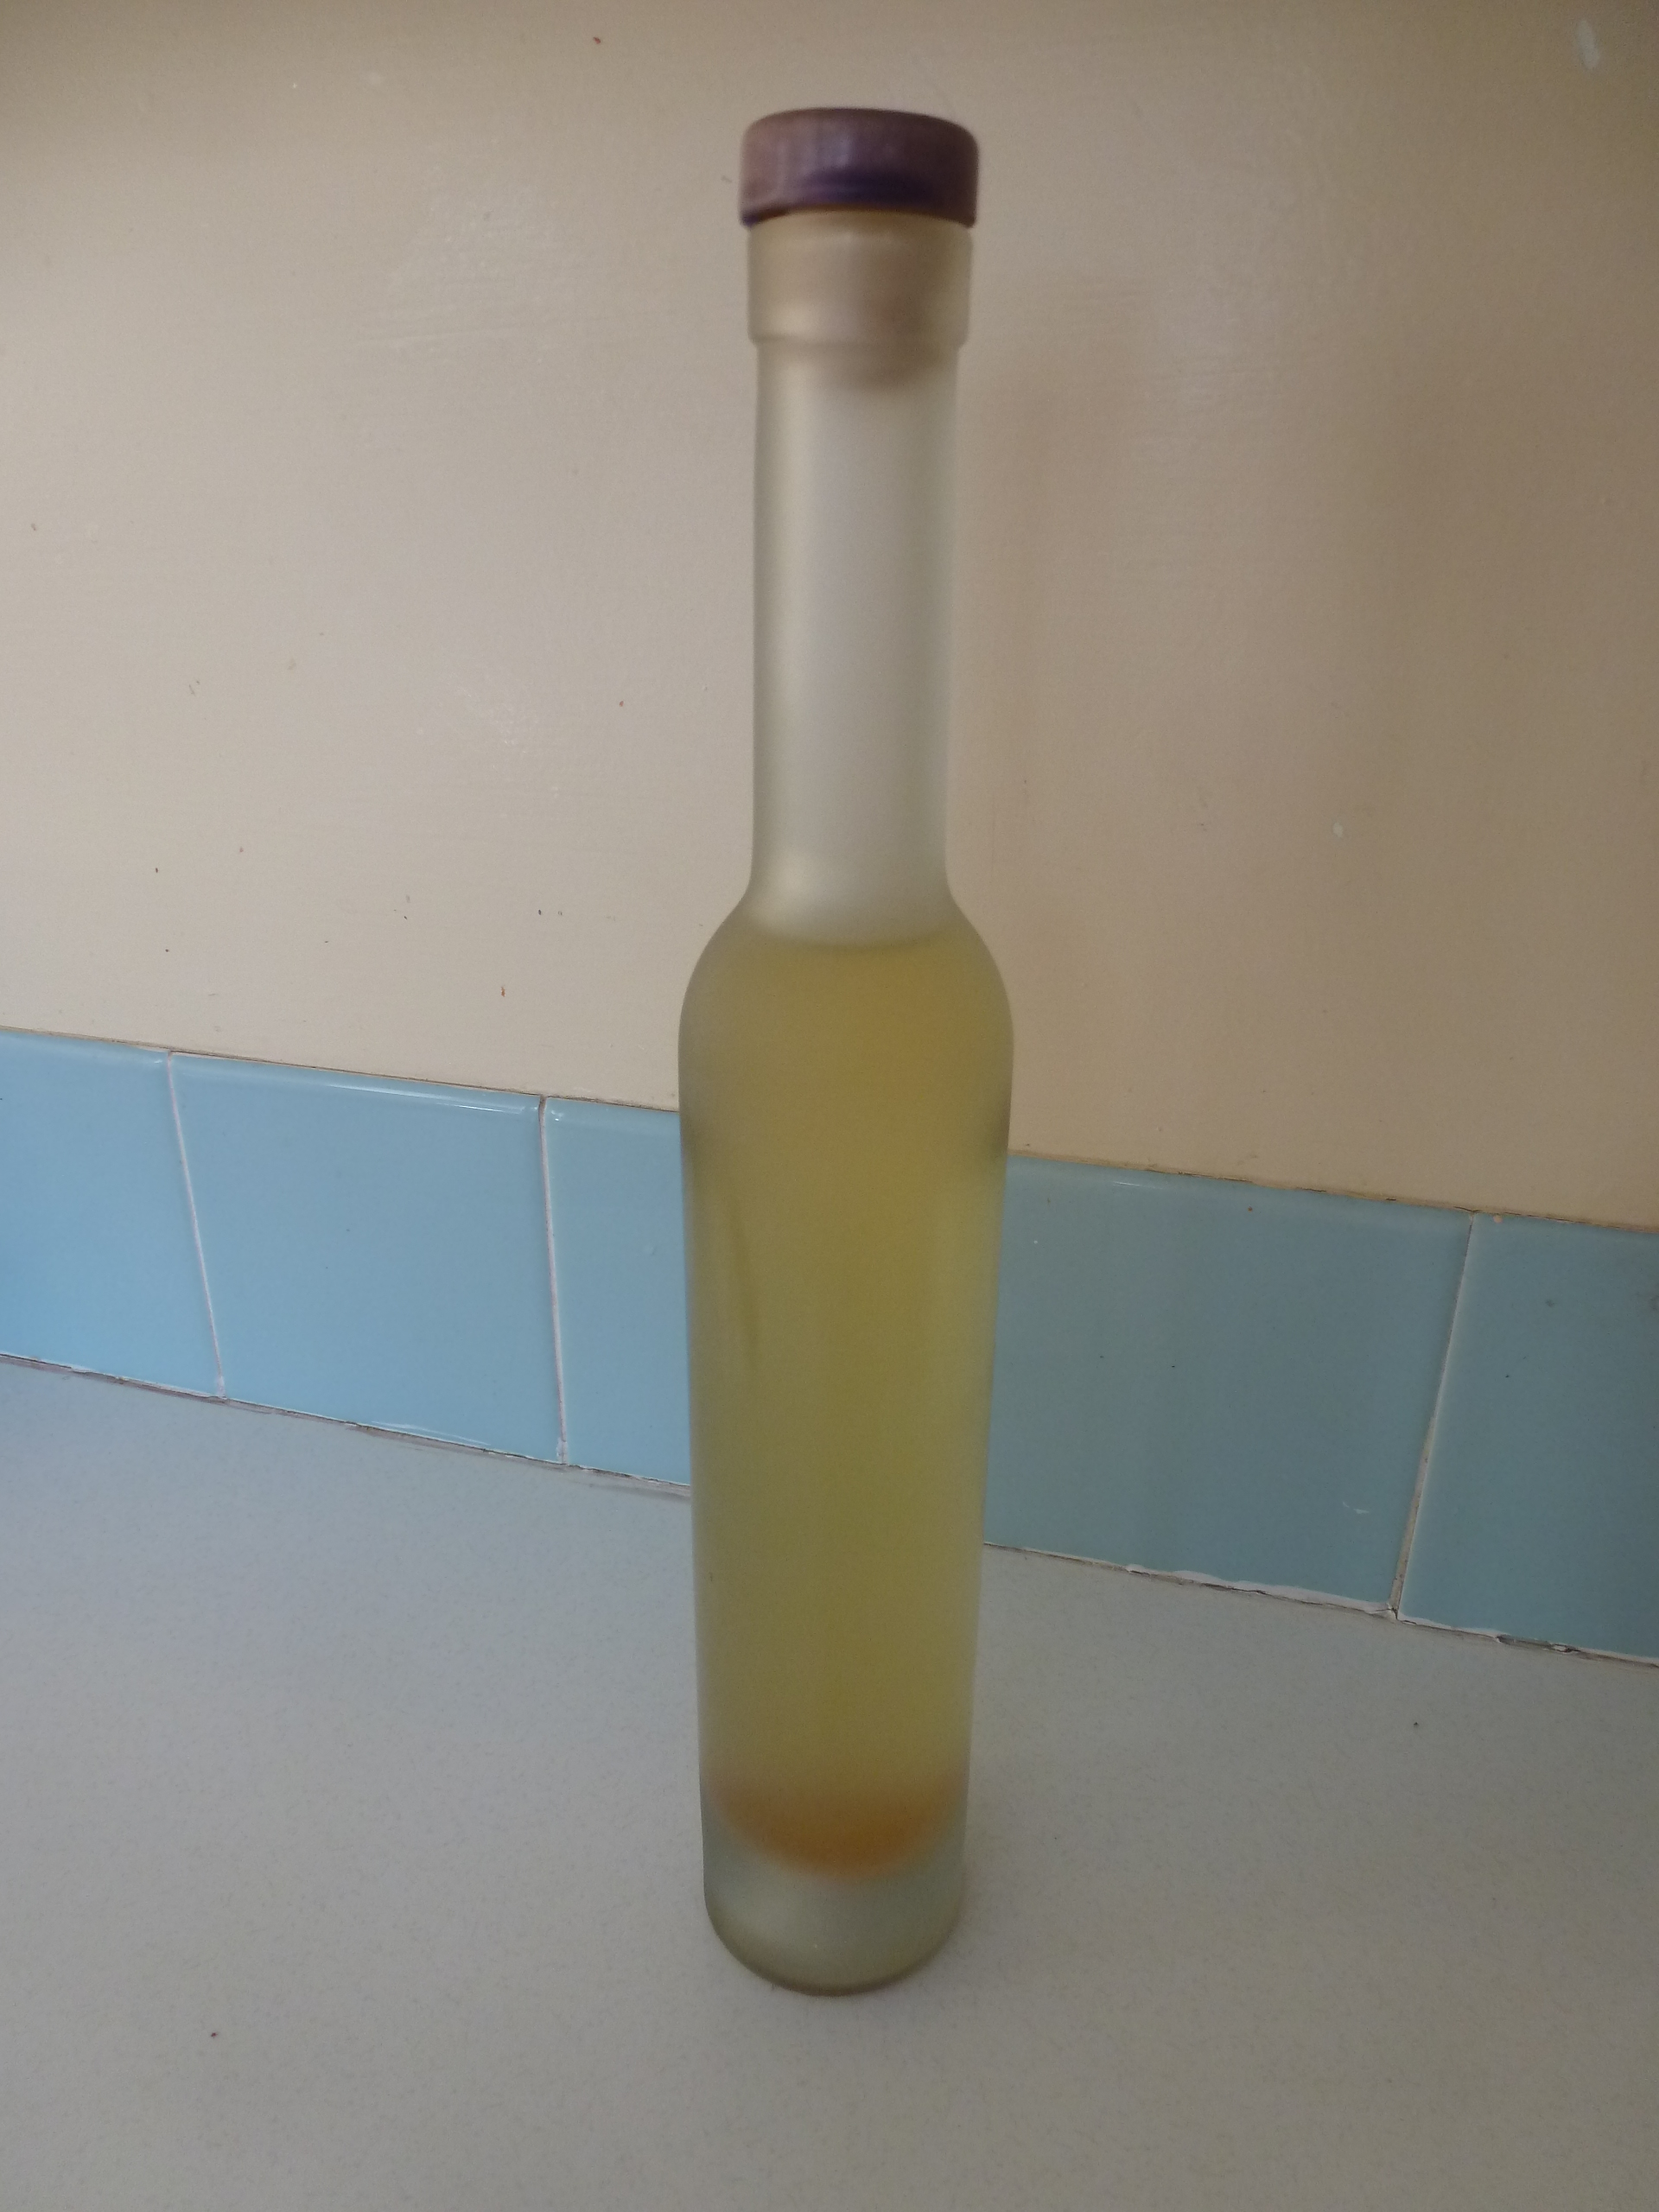 A bottle of honey-coloured homemade cider vinegar.